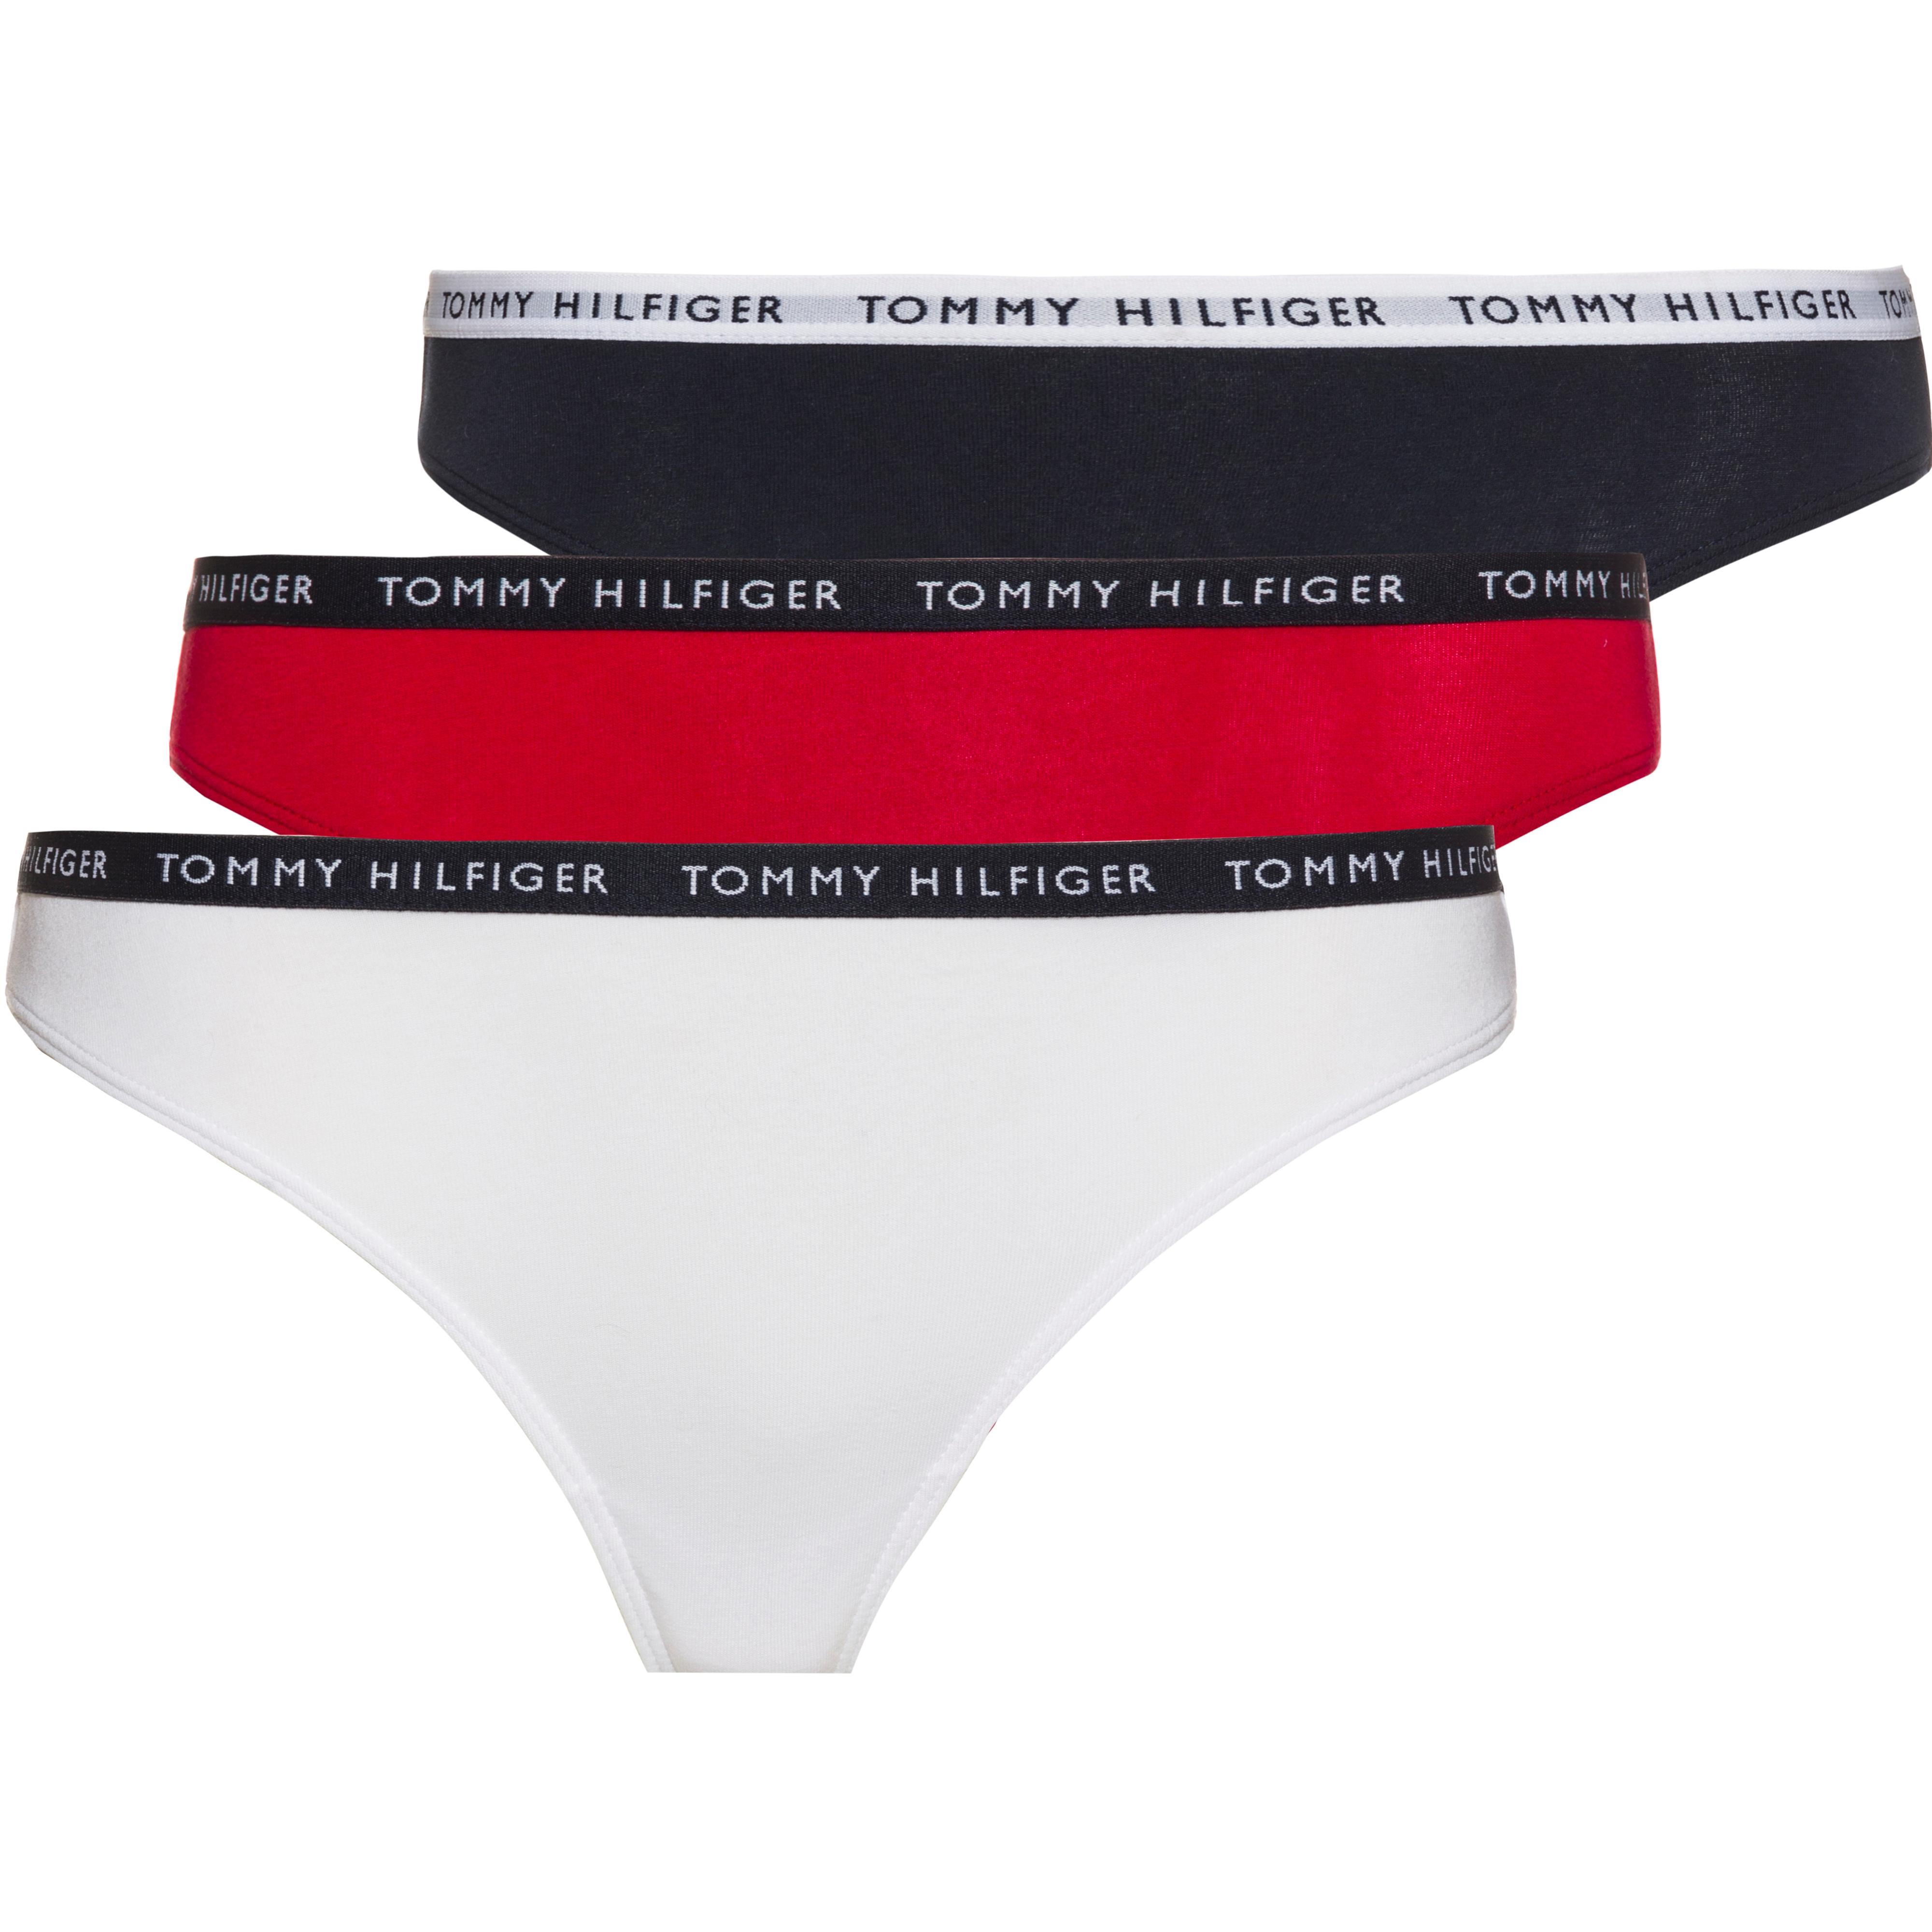 Tommy Hilfiger Unterhose Damen white-desert sky-primary red im